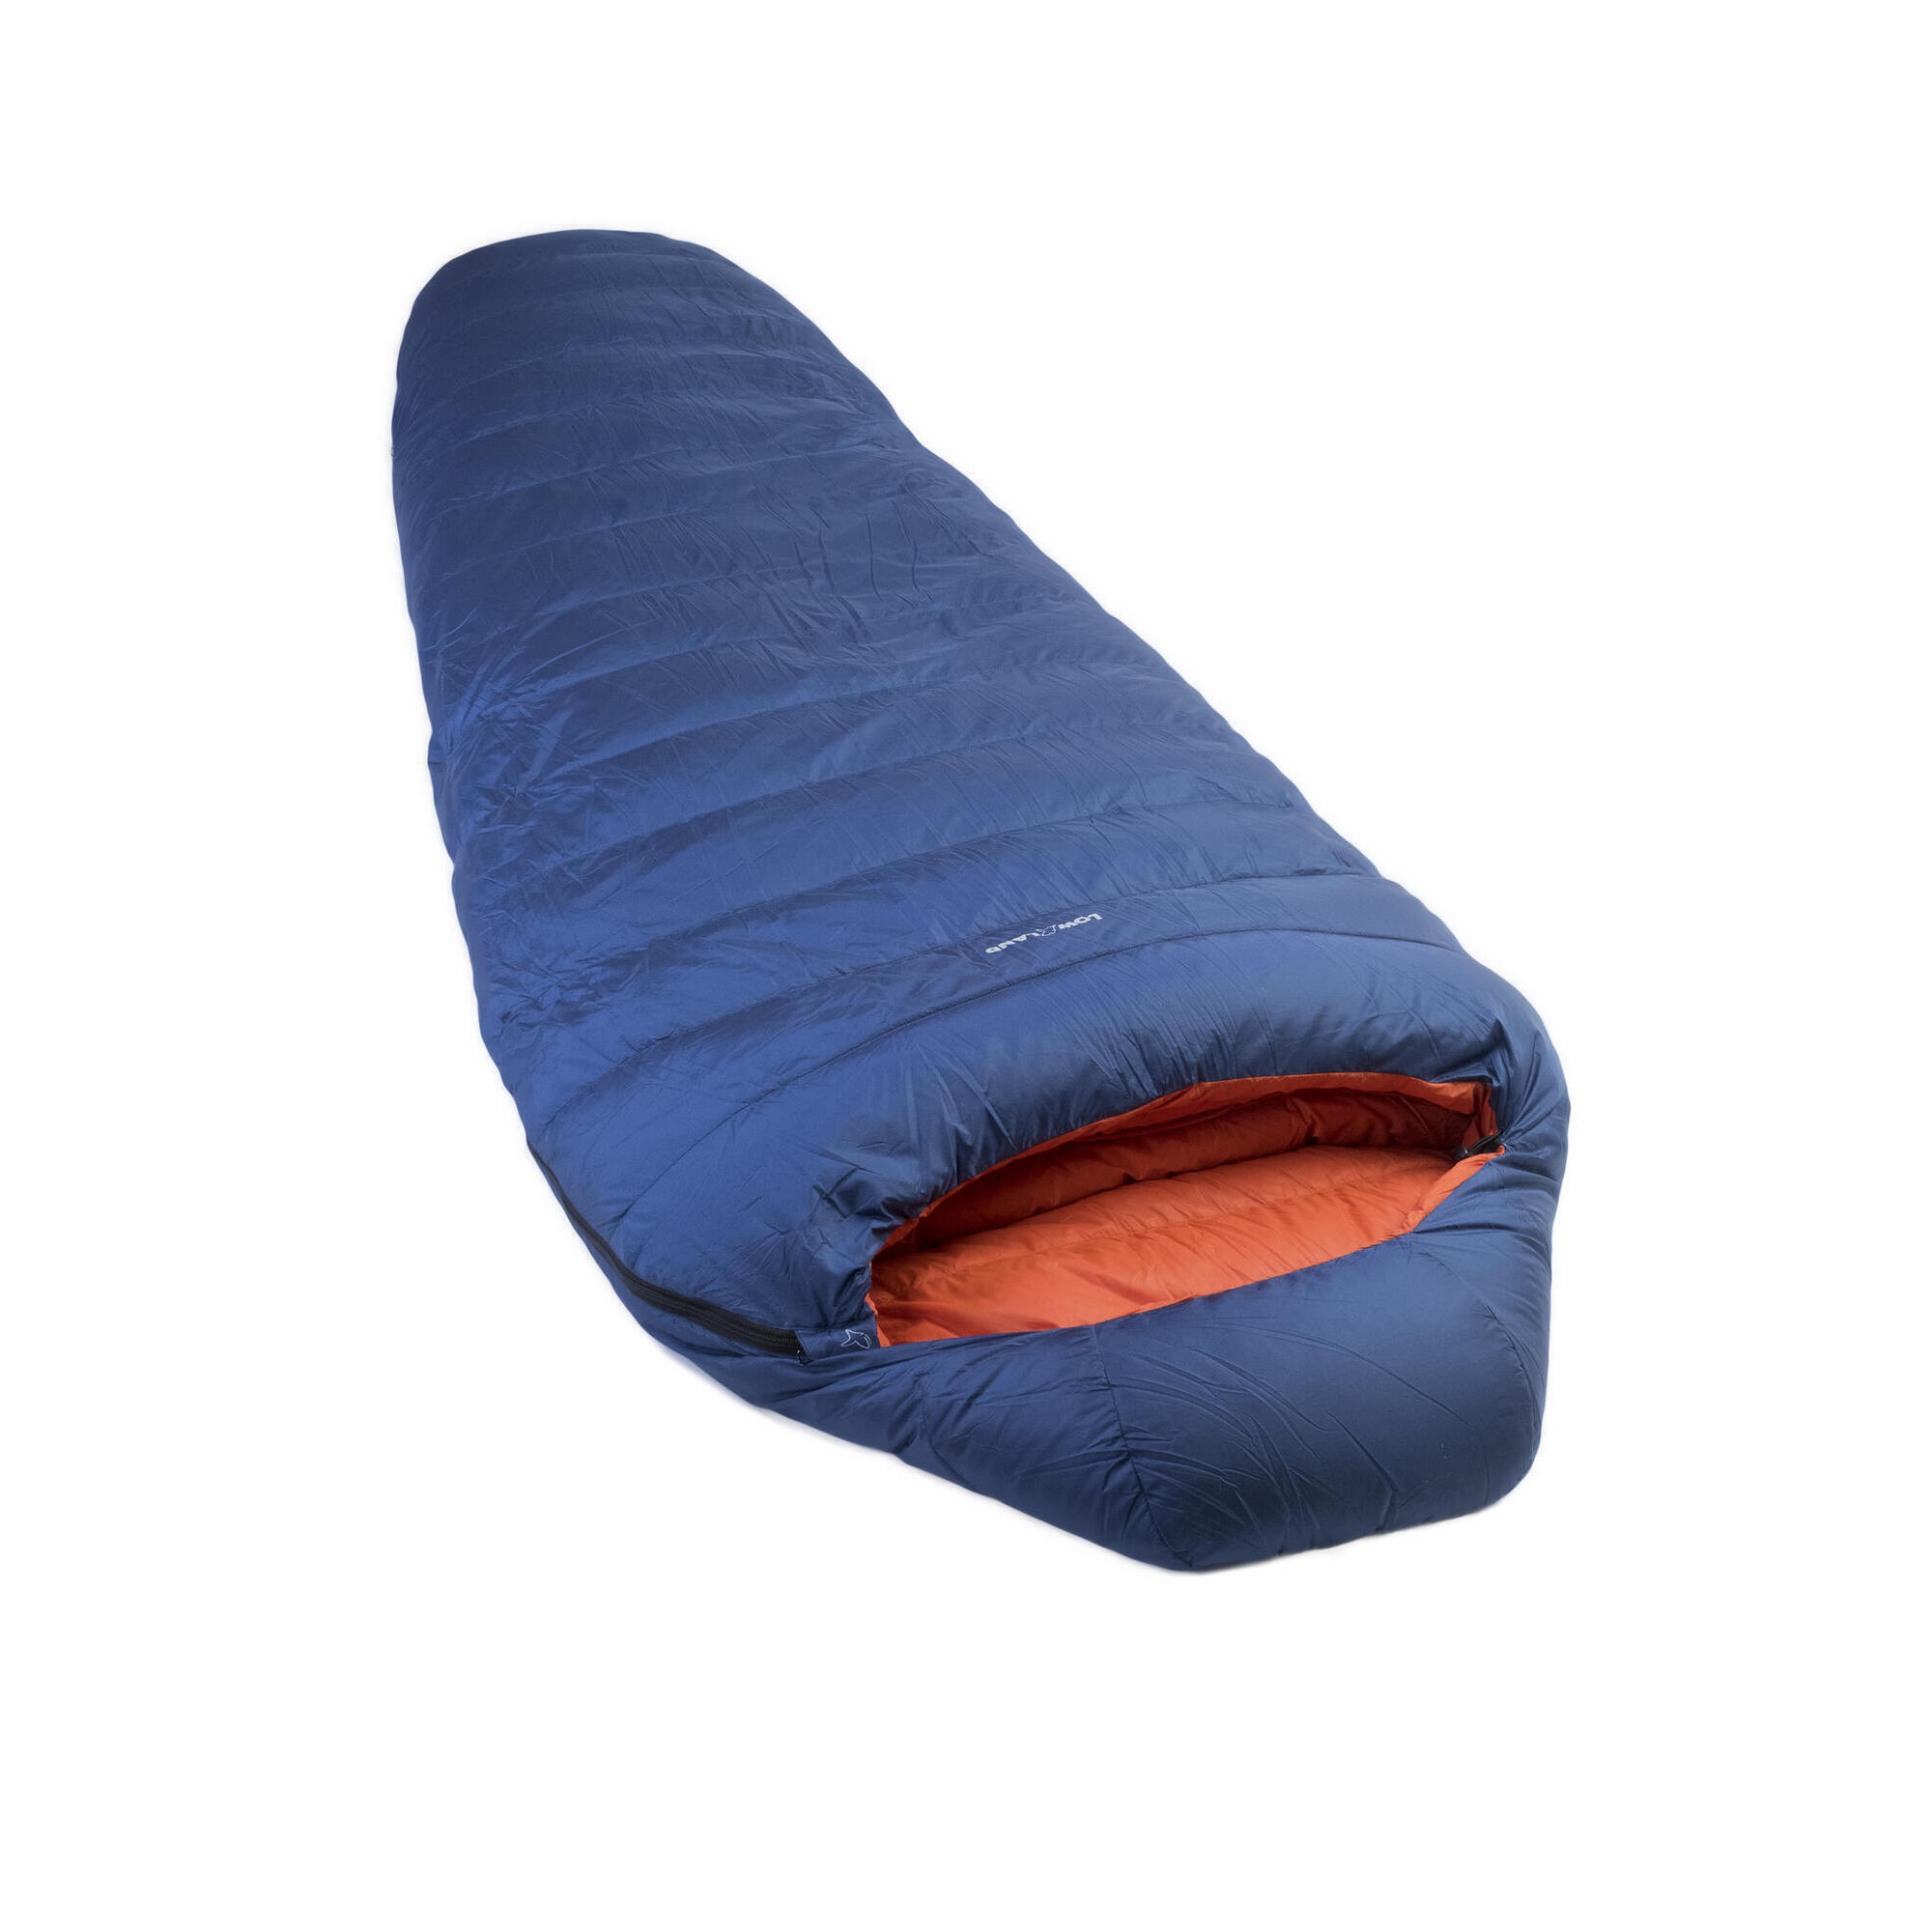 Мешок Kibo - 5 пуховый спальный нейлоновый 225x80 см, сине - оранжевый спальный мешок для младенцев и детей надувная комната стильный спальный мешок для новорожденных спальный мешок для зимы